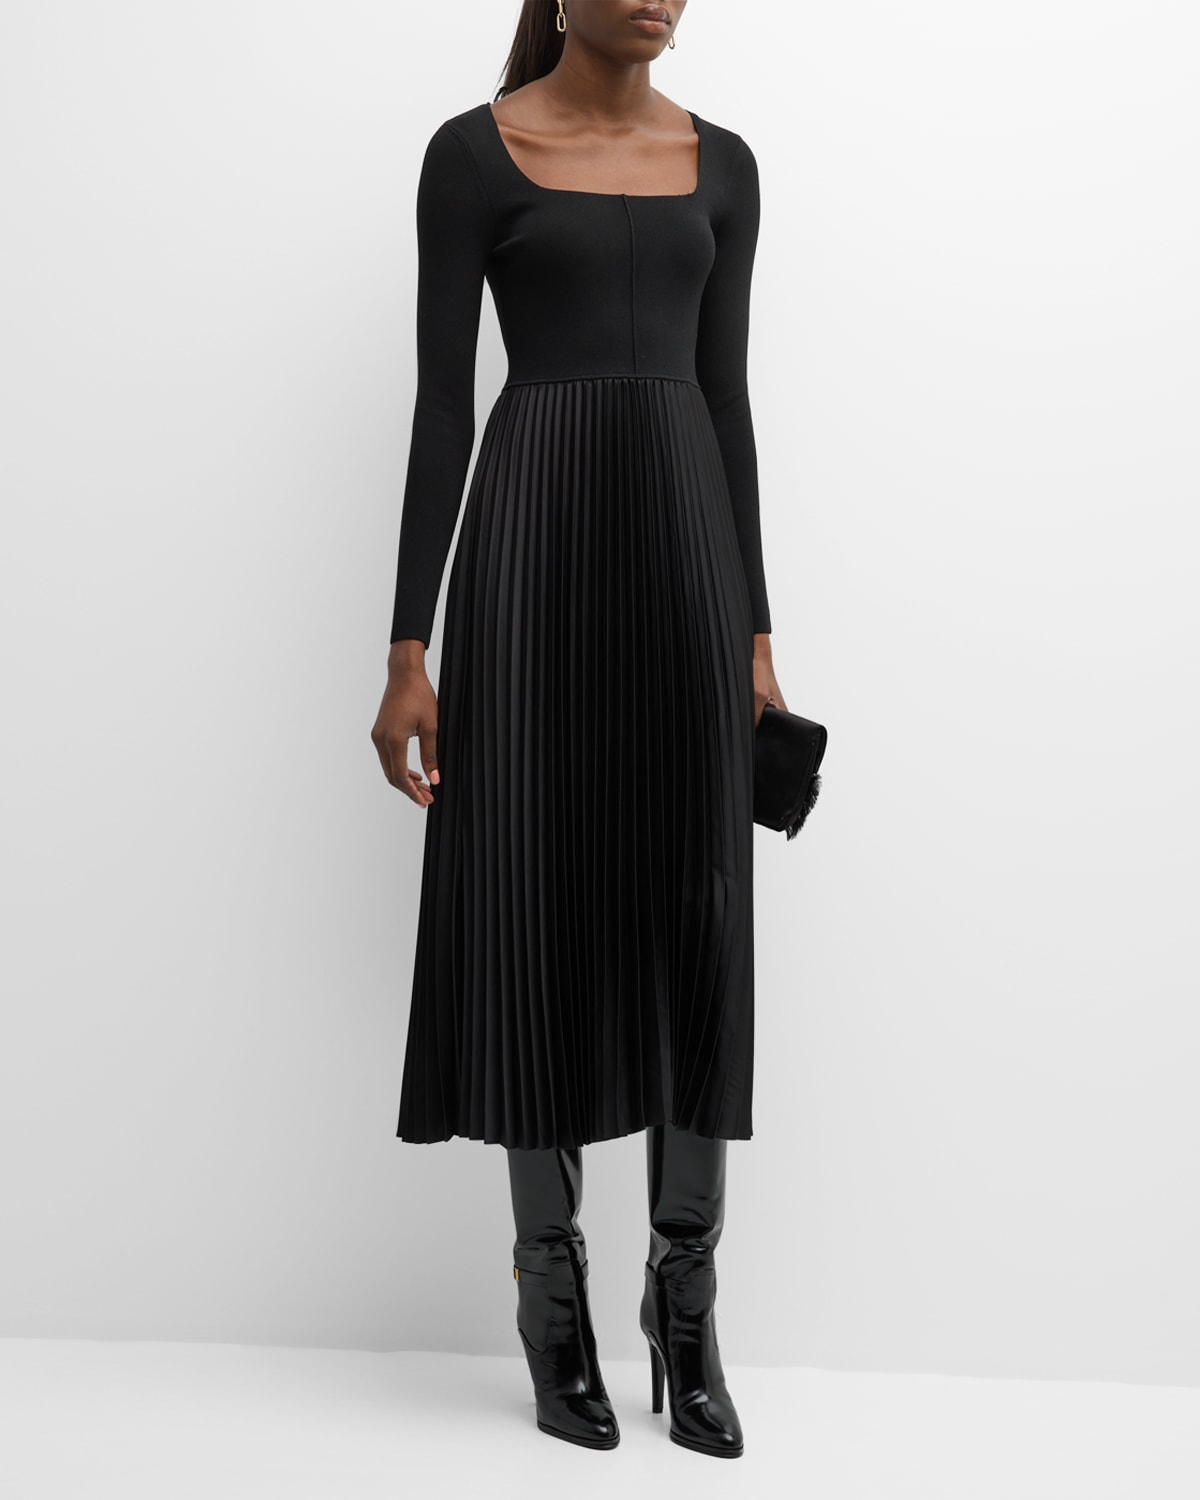 Sequin Slip Dress – Elie Tahari